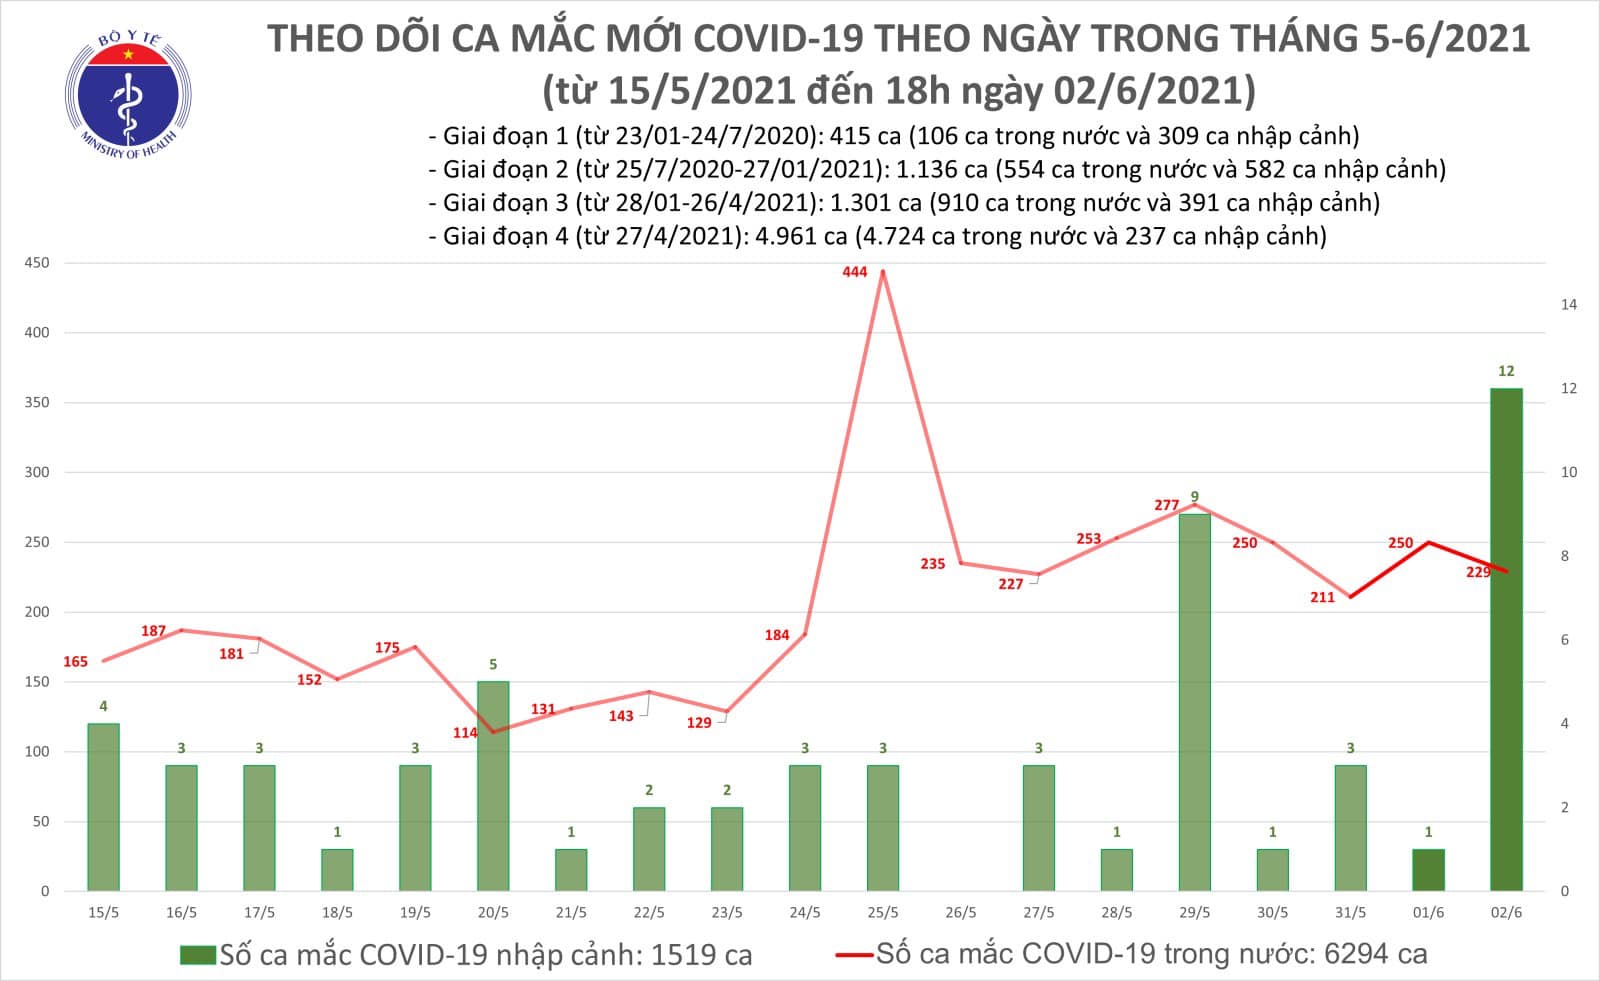 Chiều 2/6 có 128 ca Covid-19 trong nước, Bắc Giang, TP Hồ Chí Minh &quot;dẫn đầu&quot; - Ảnh 1.